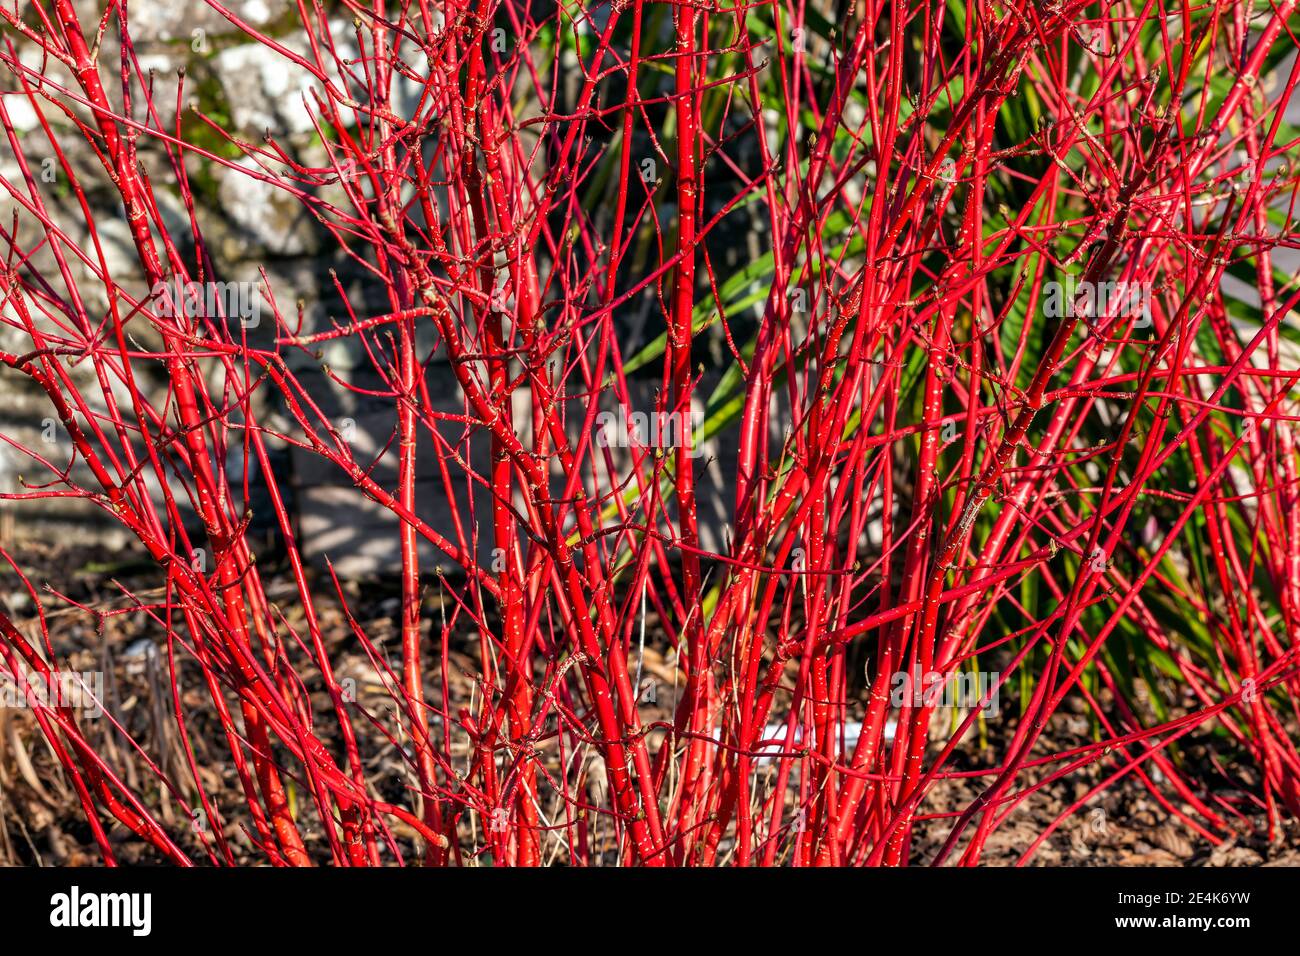 Arbusto di Cornus alba 'Sibirica' con steli rosso cremisi in inverno e foglie rosse in autunno comunemente noto come dogwood siberiano, foto d'inventario Foto Stock